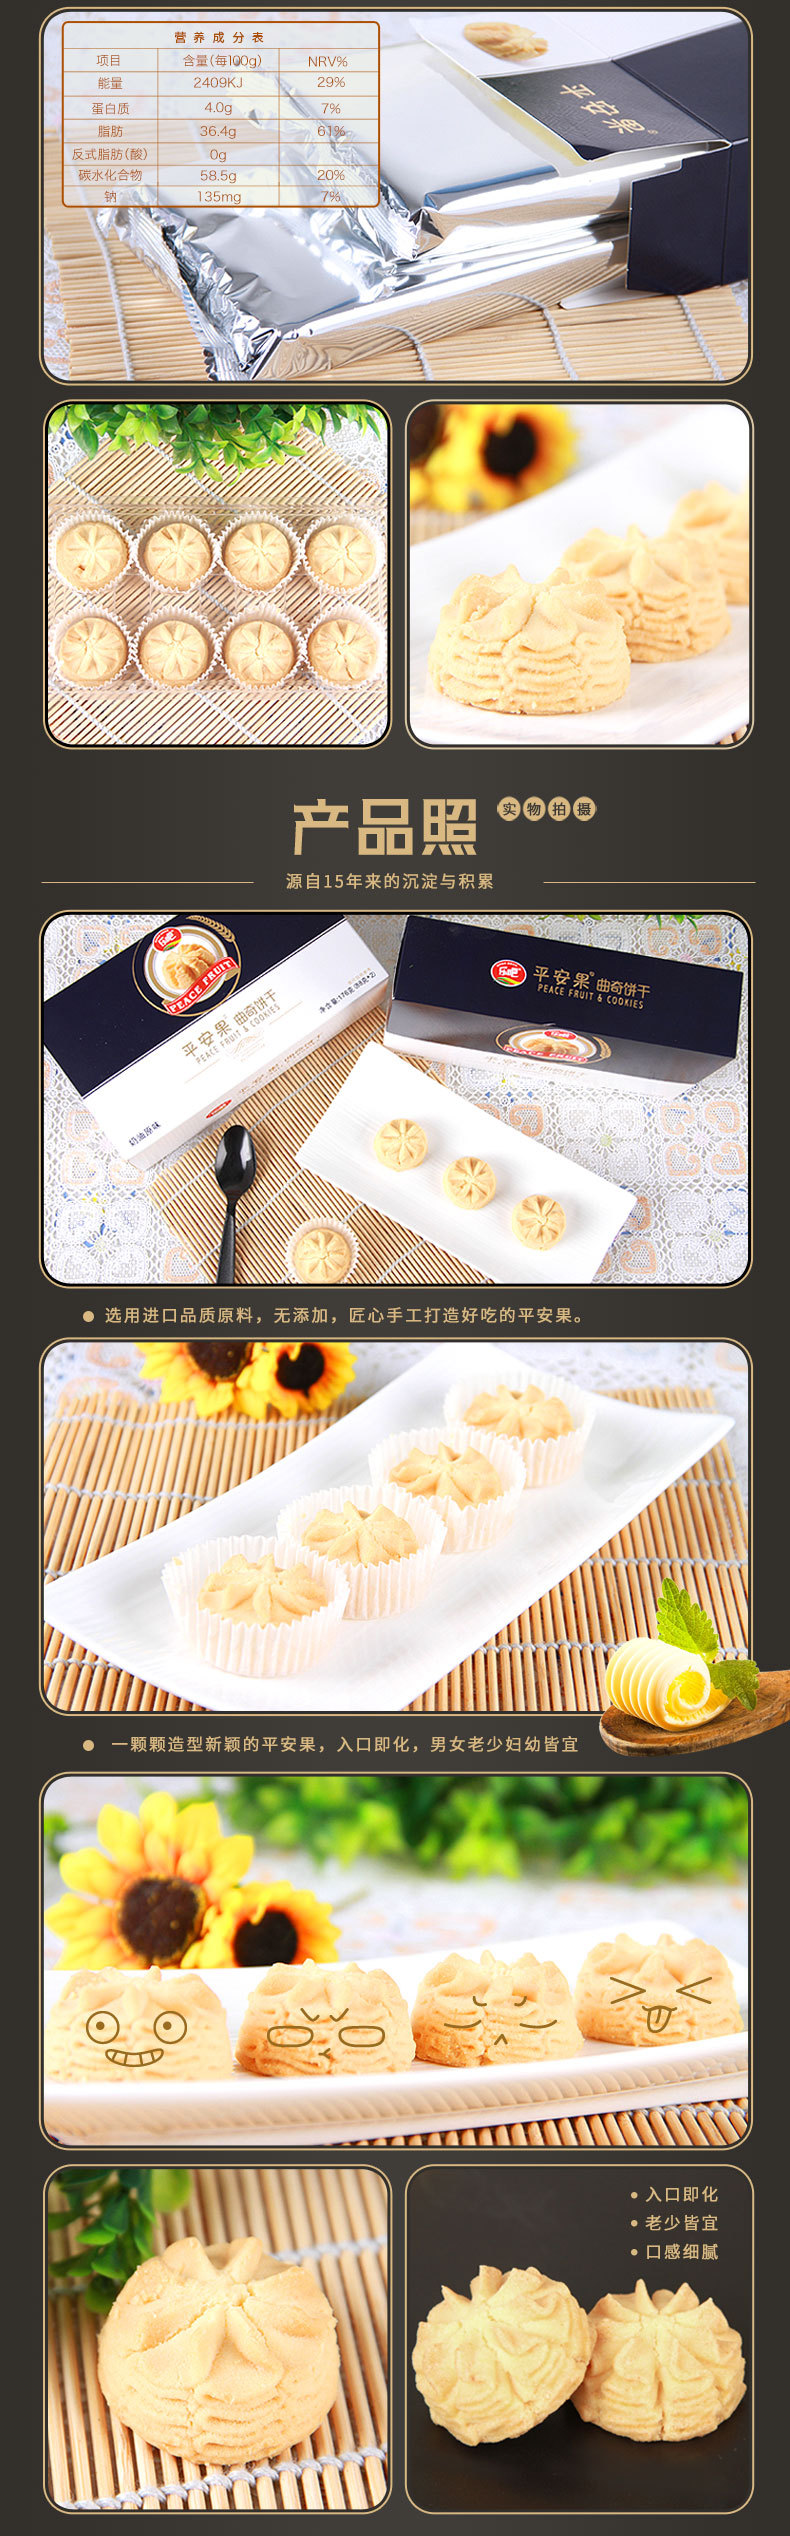 休闲零食 【乐吧曲奇】平安果曲奇饼干手工糕点176g/盒 运费7元 2件包邮